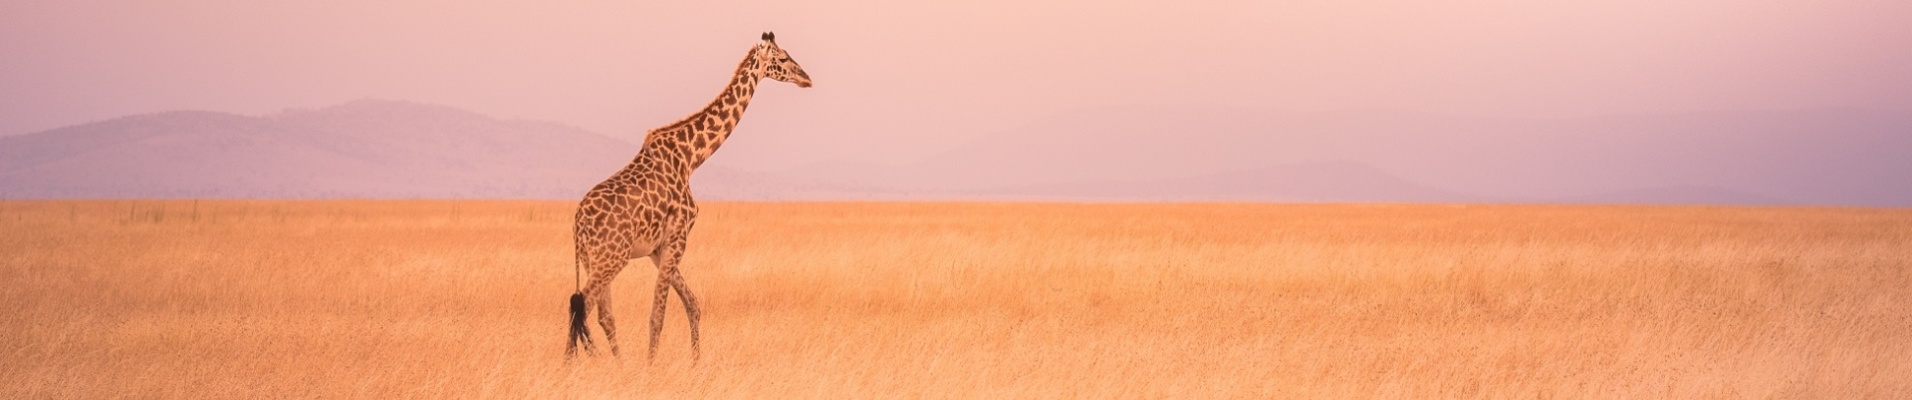 girafe coucher de soleil tanzanie